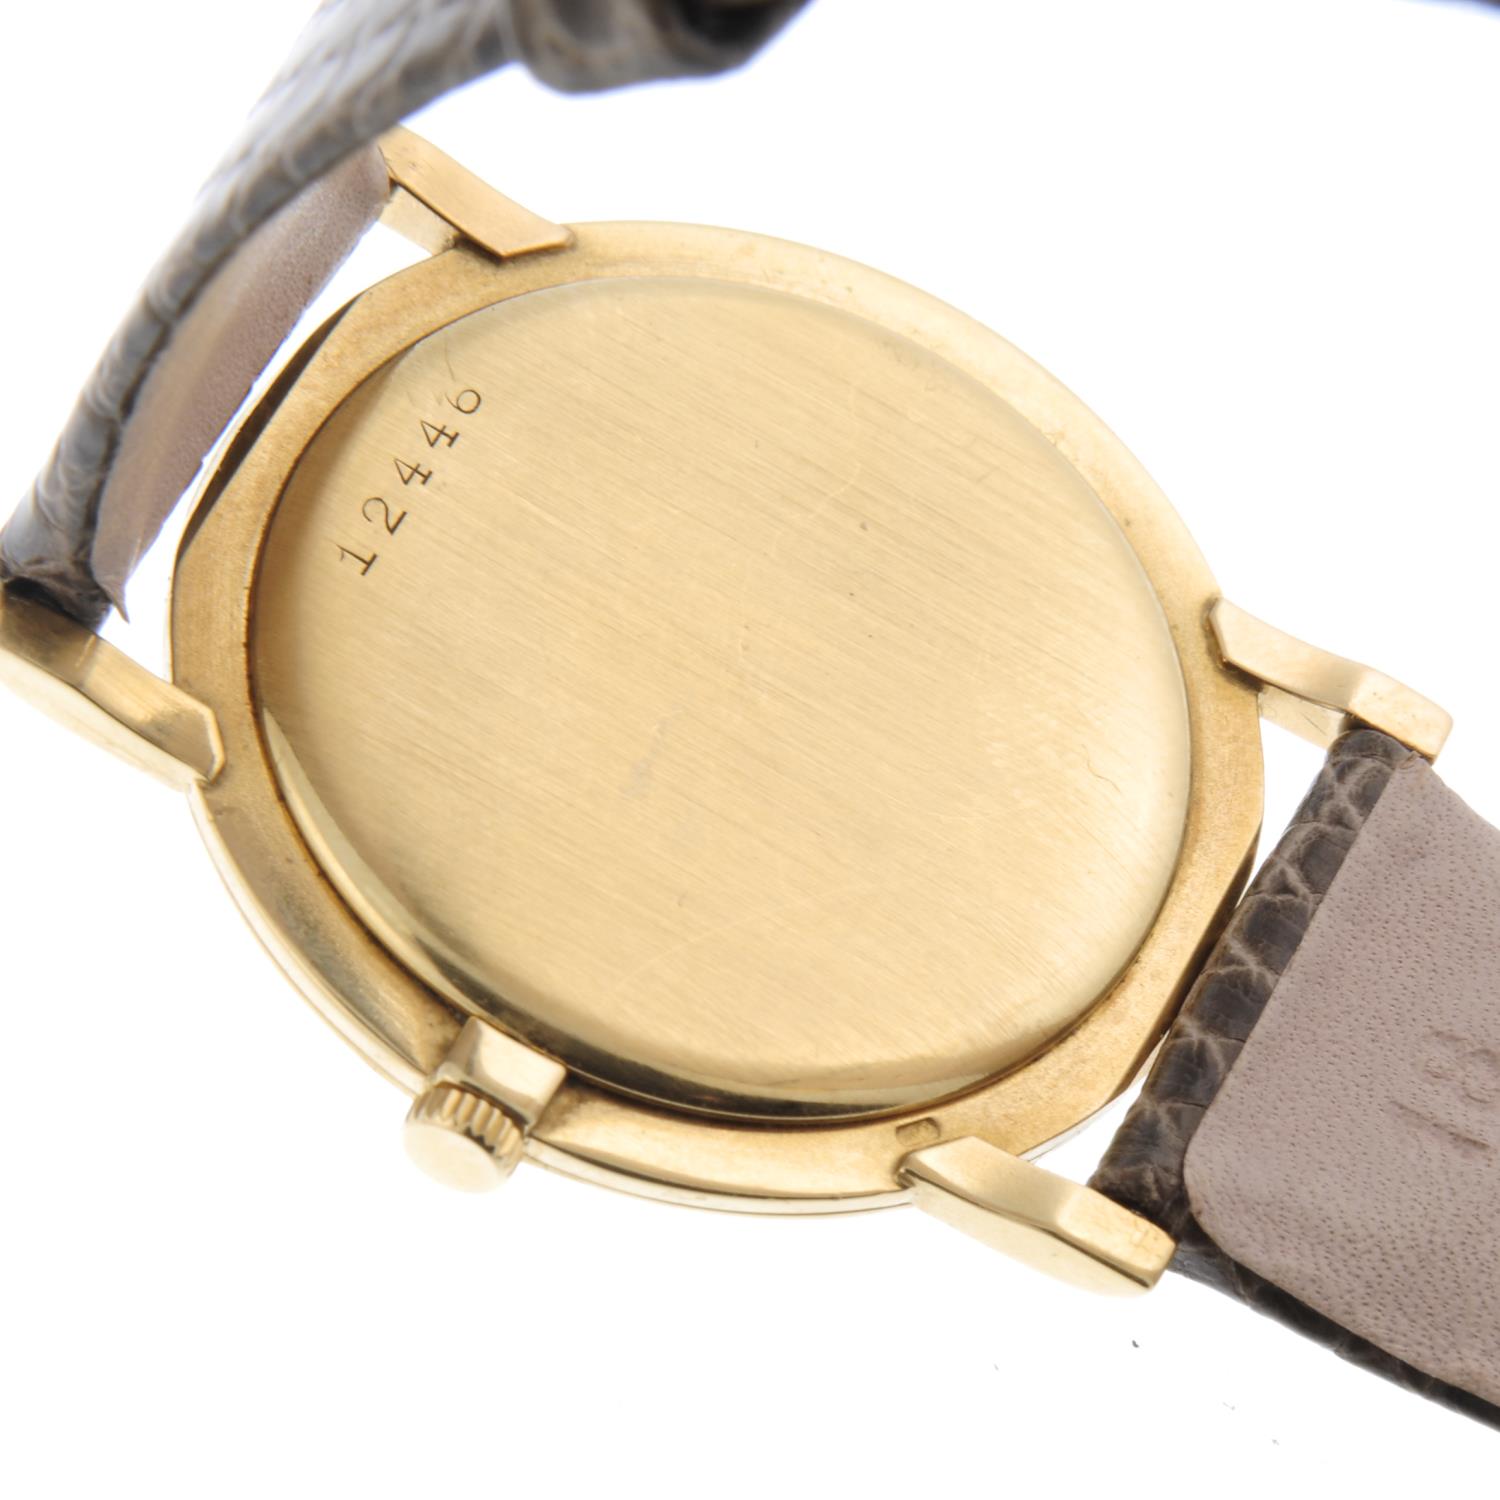 AUDEMARS PIGUET - a gentleman's wrist watch. - Image 3 of 4